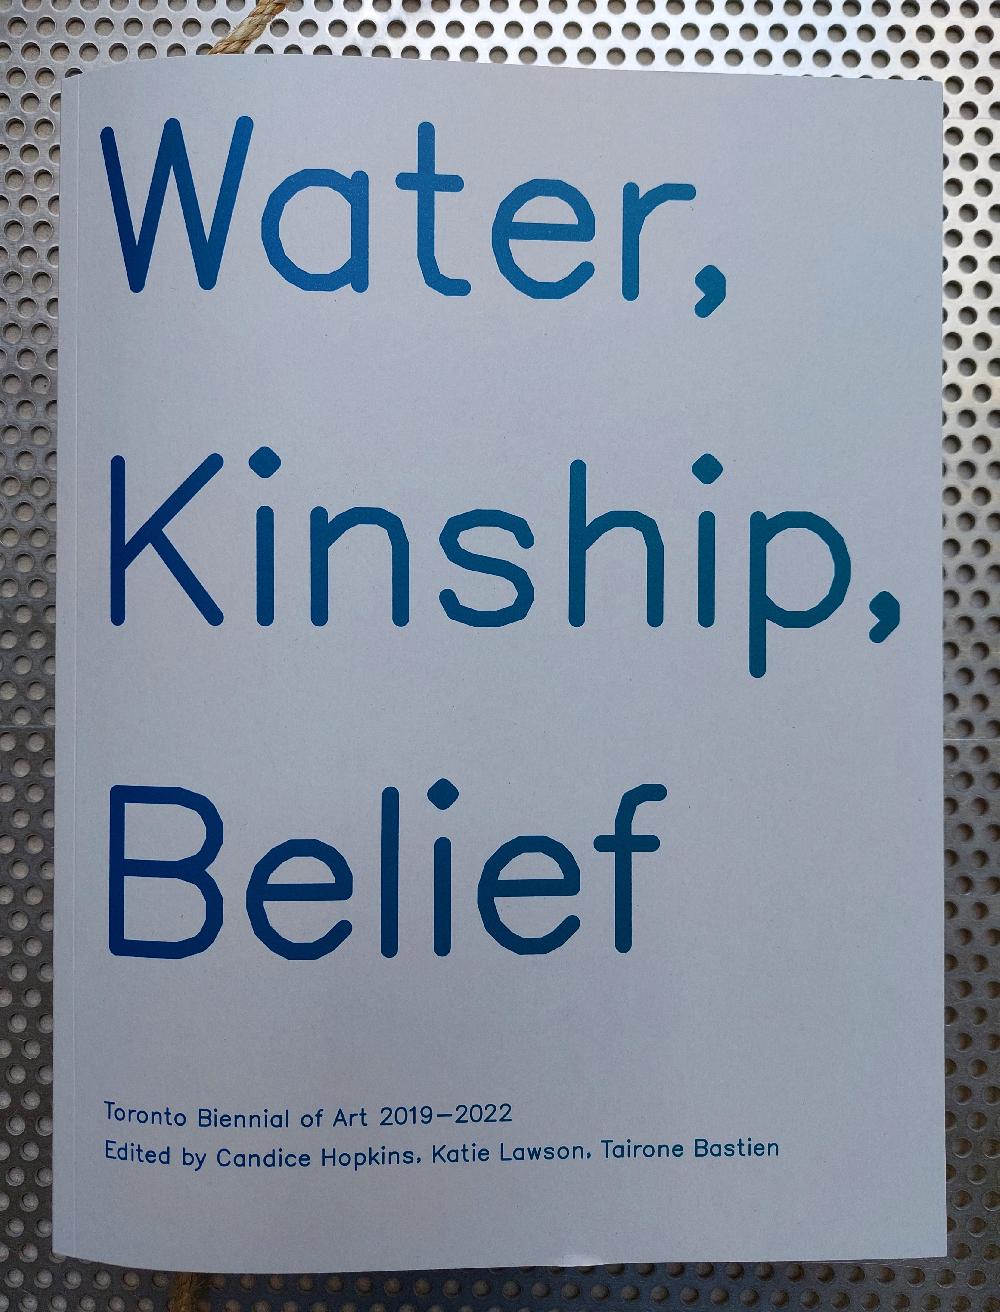 Water, Kinship, Belief